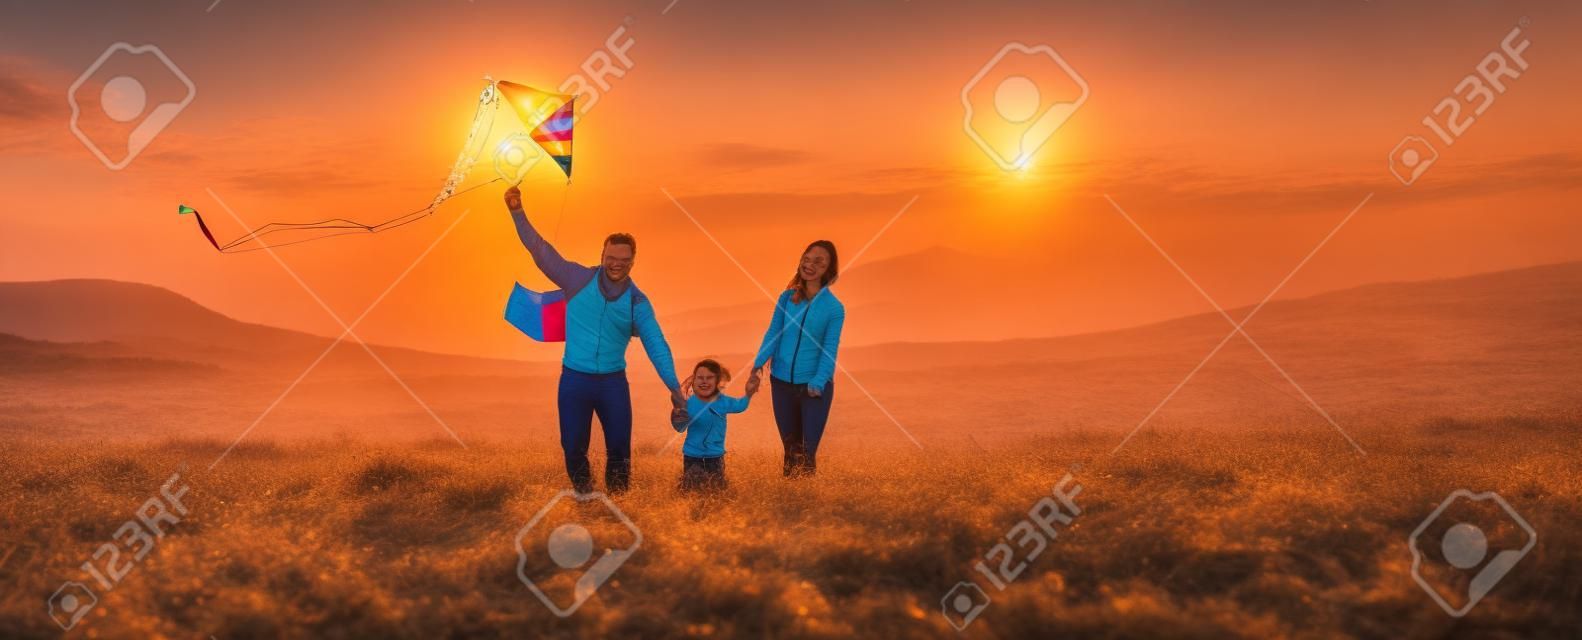 Счастливая семья, отец, мать и дочь ребенка запускают воздушного змея на природе на закате